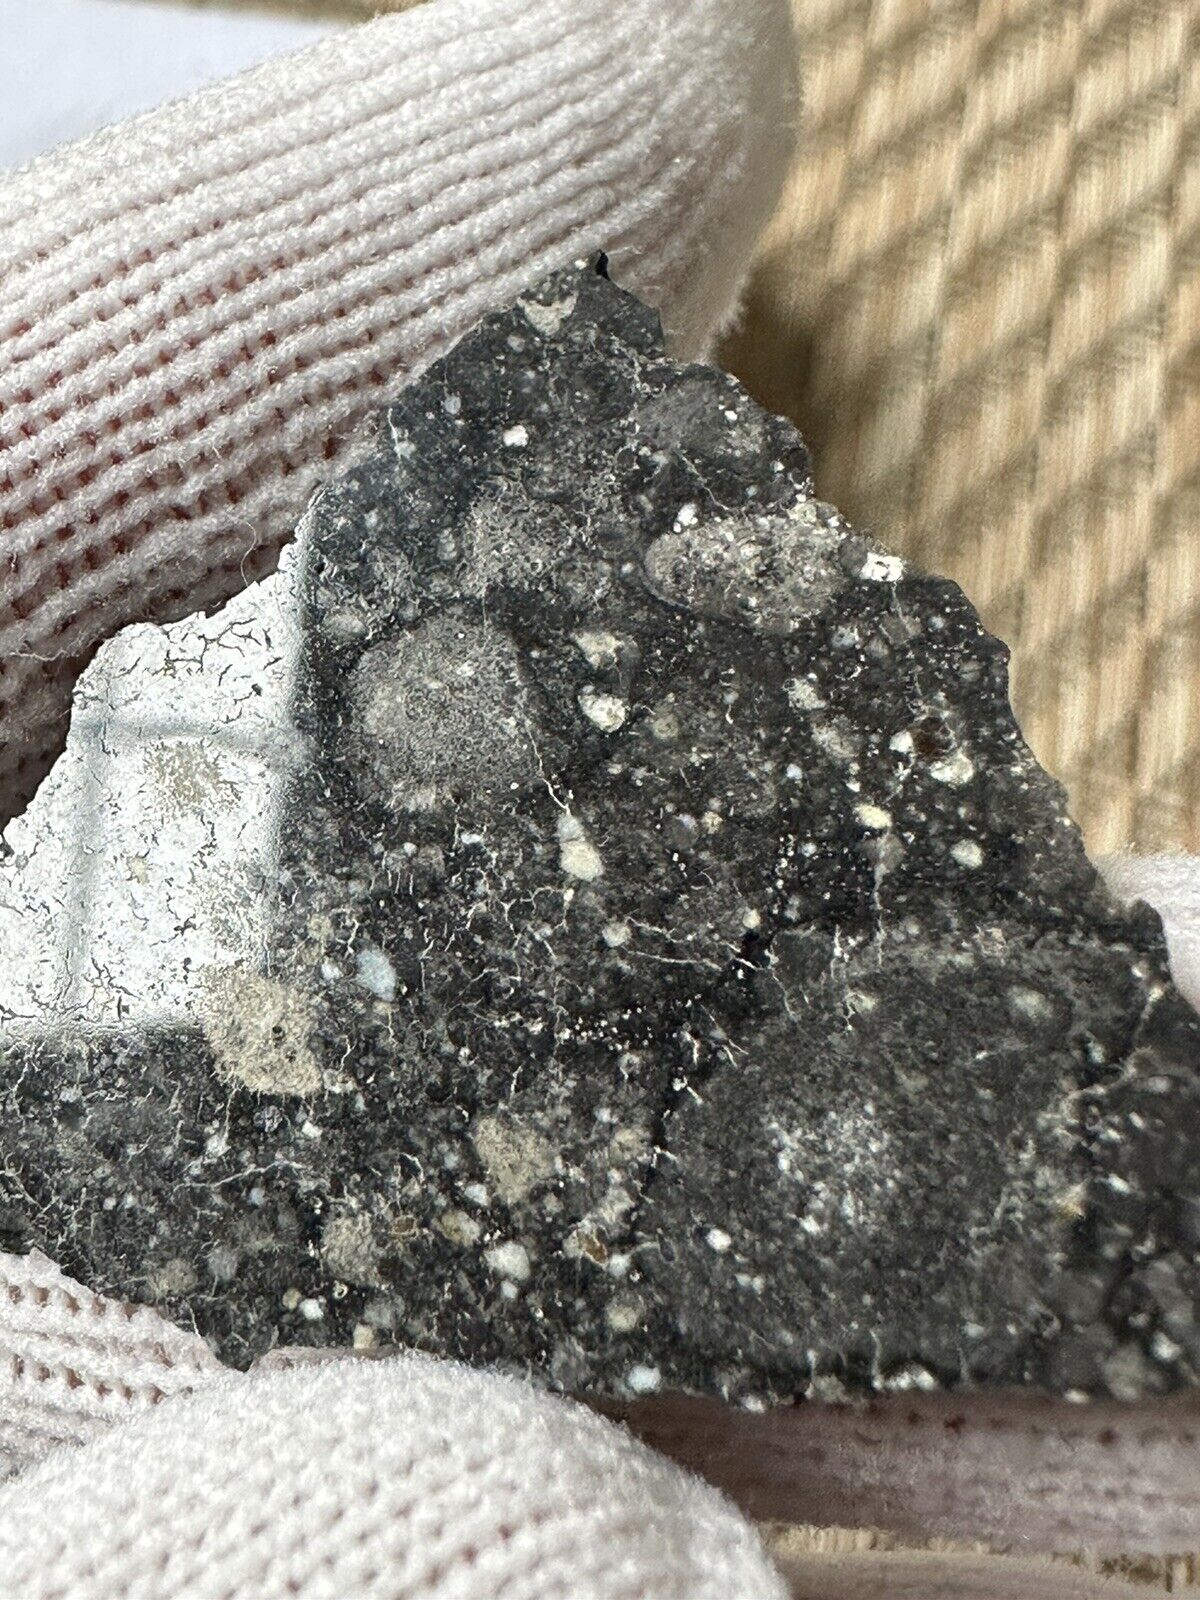 NWA 14686 Lunar Frag. Breccia found in 2020, 4.7 gram slice.